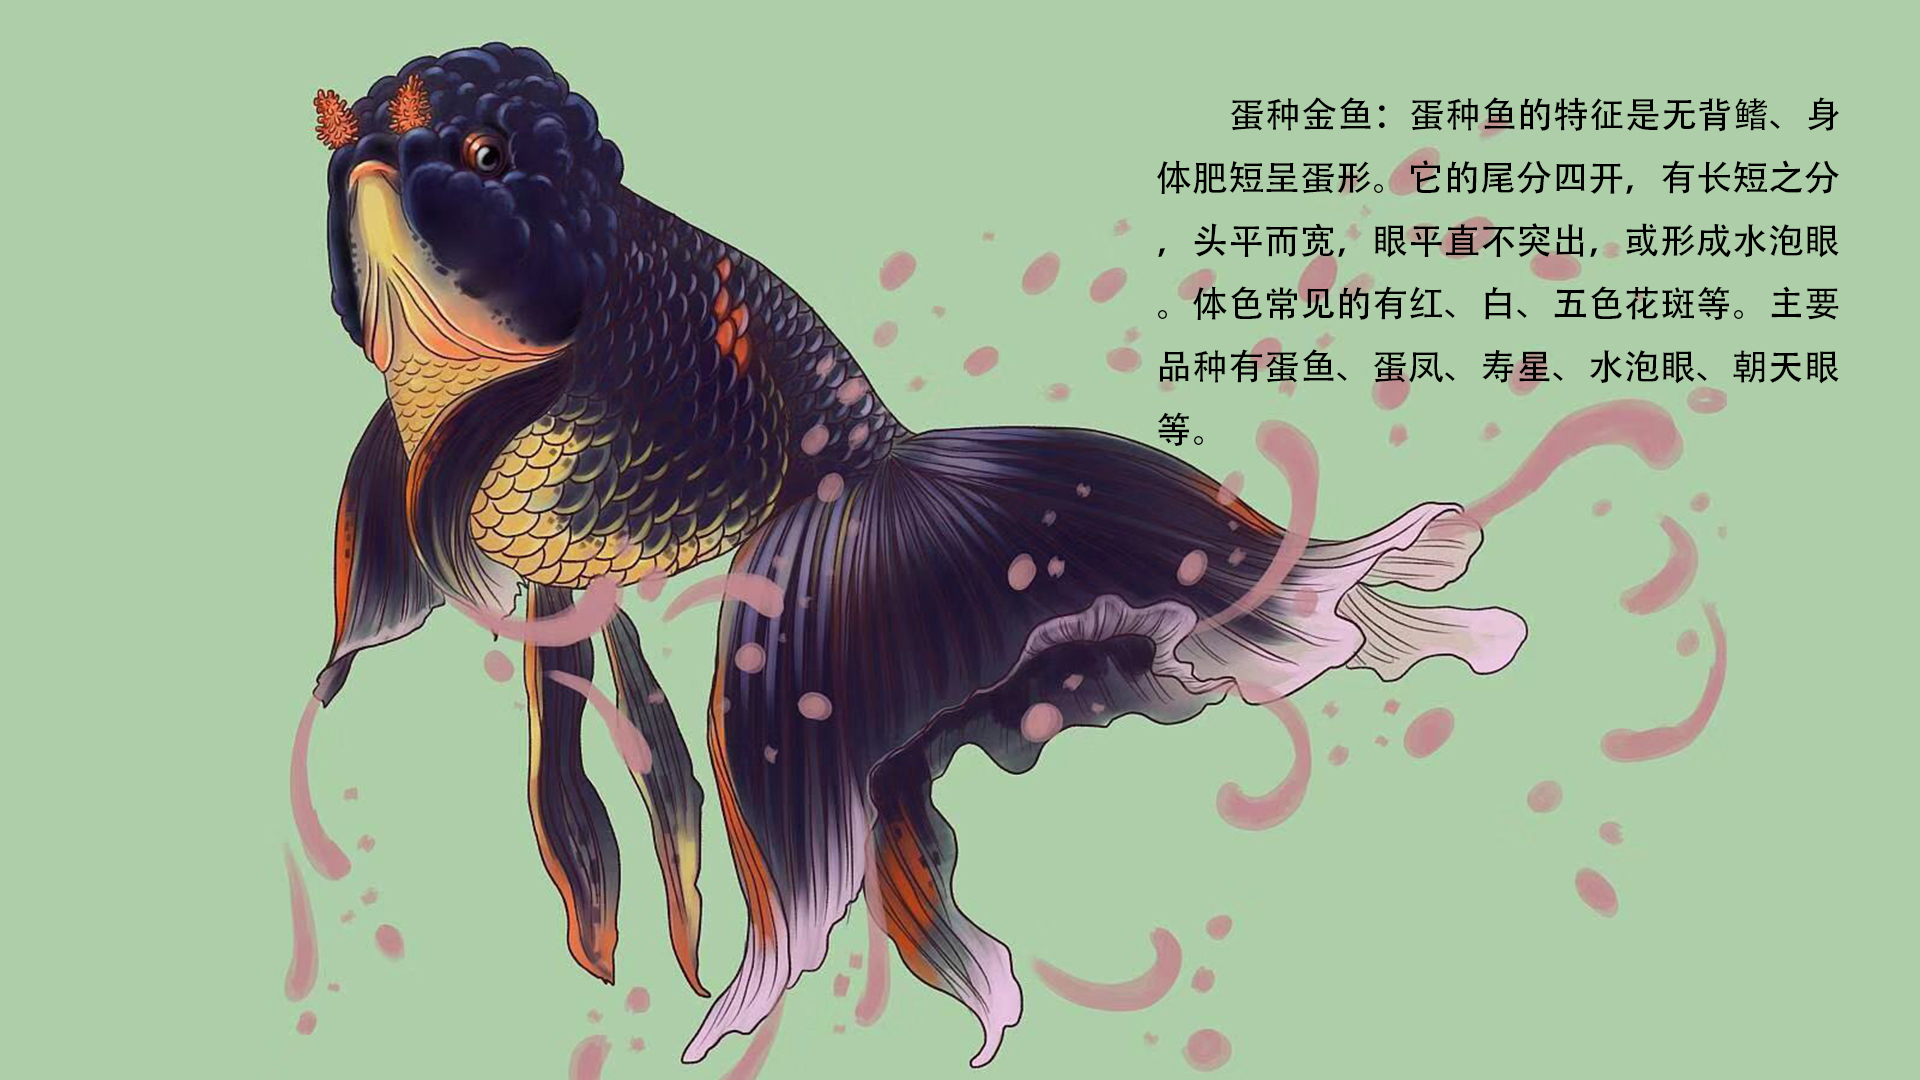 中国古代人把可观赏的金鱼分为以下几种